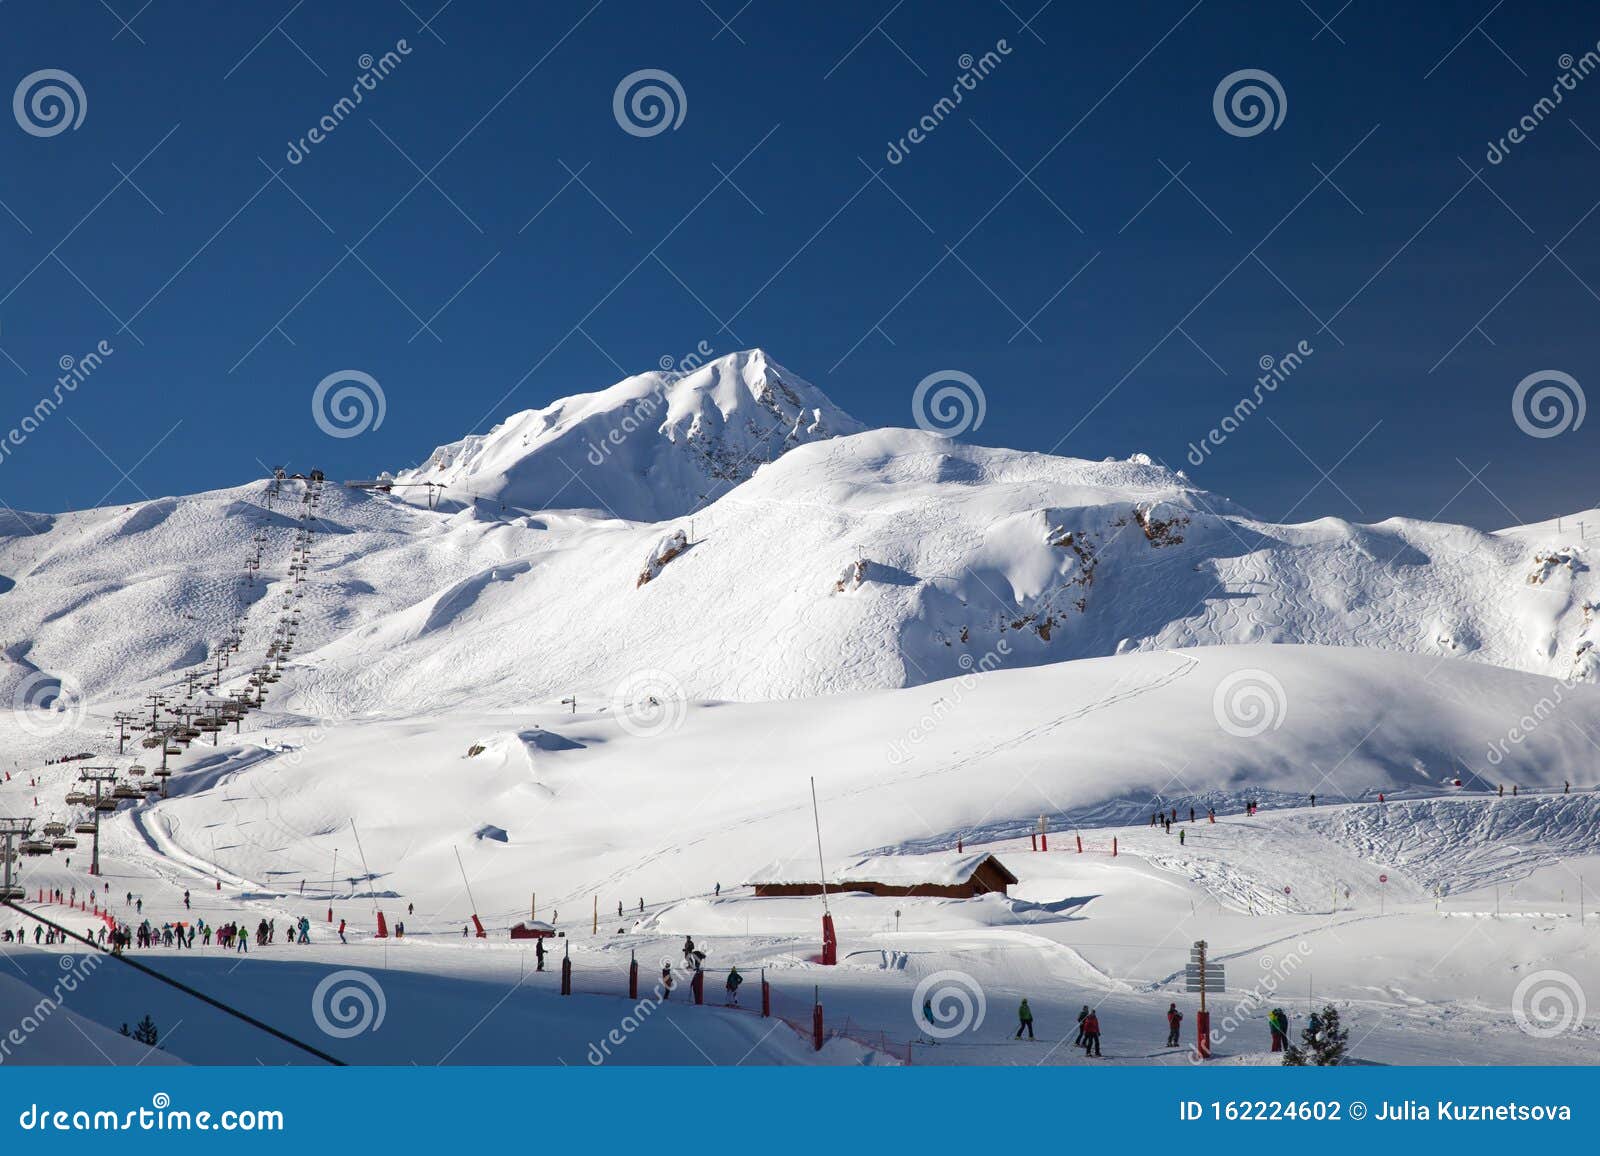 ski slopes in les arcs, france